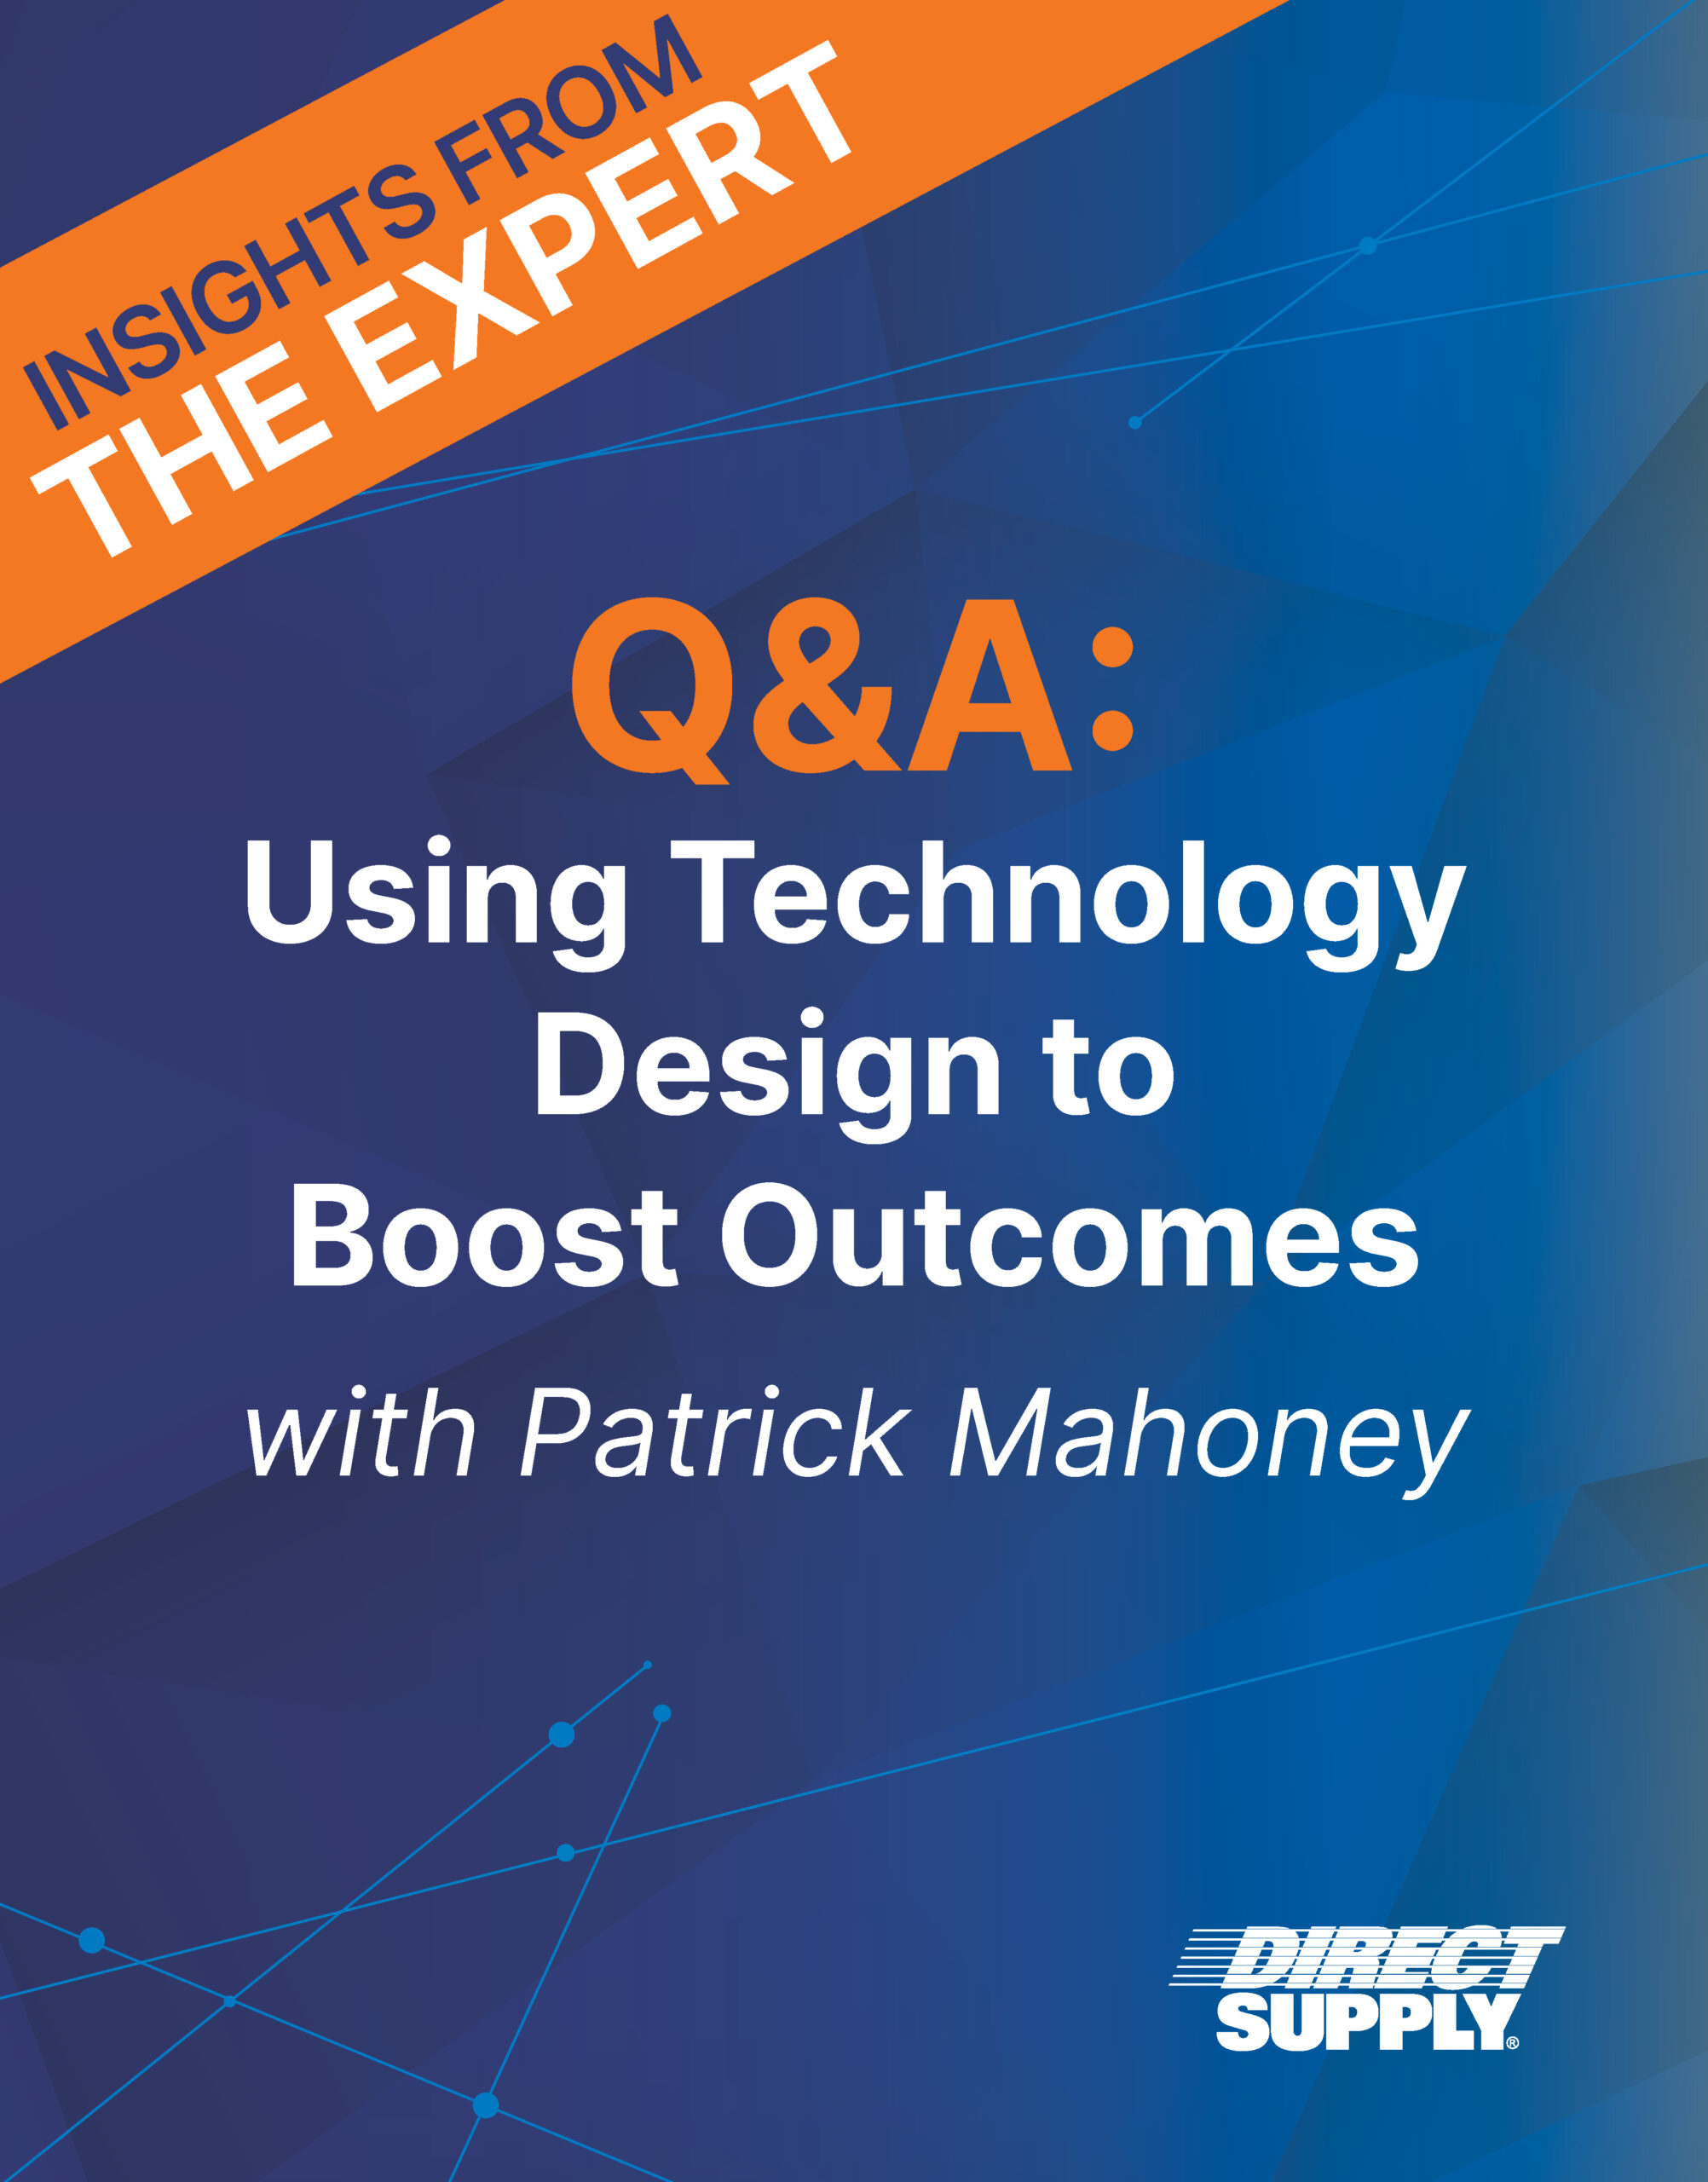 Patrick Mahoney, Technology Design in Senior Living 